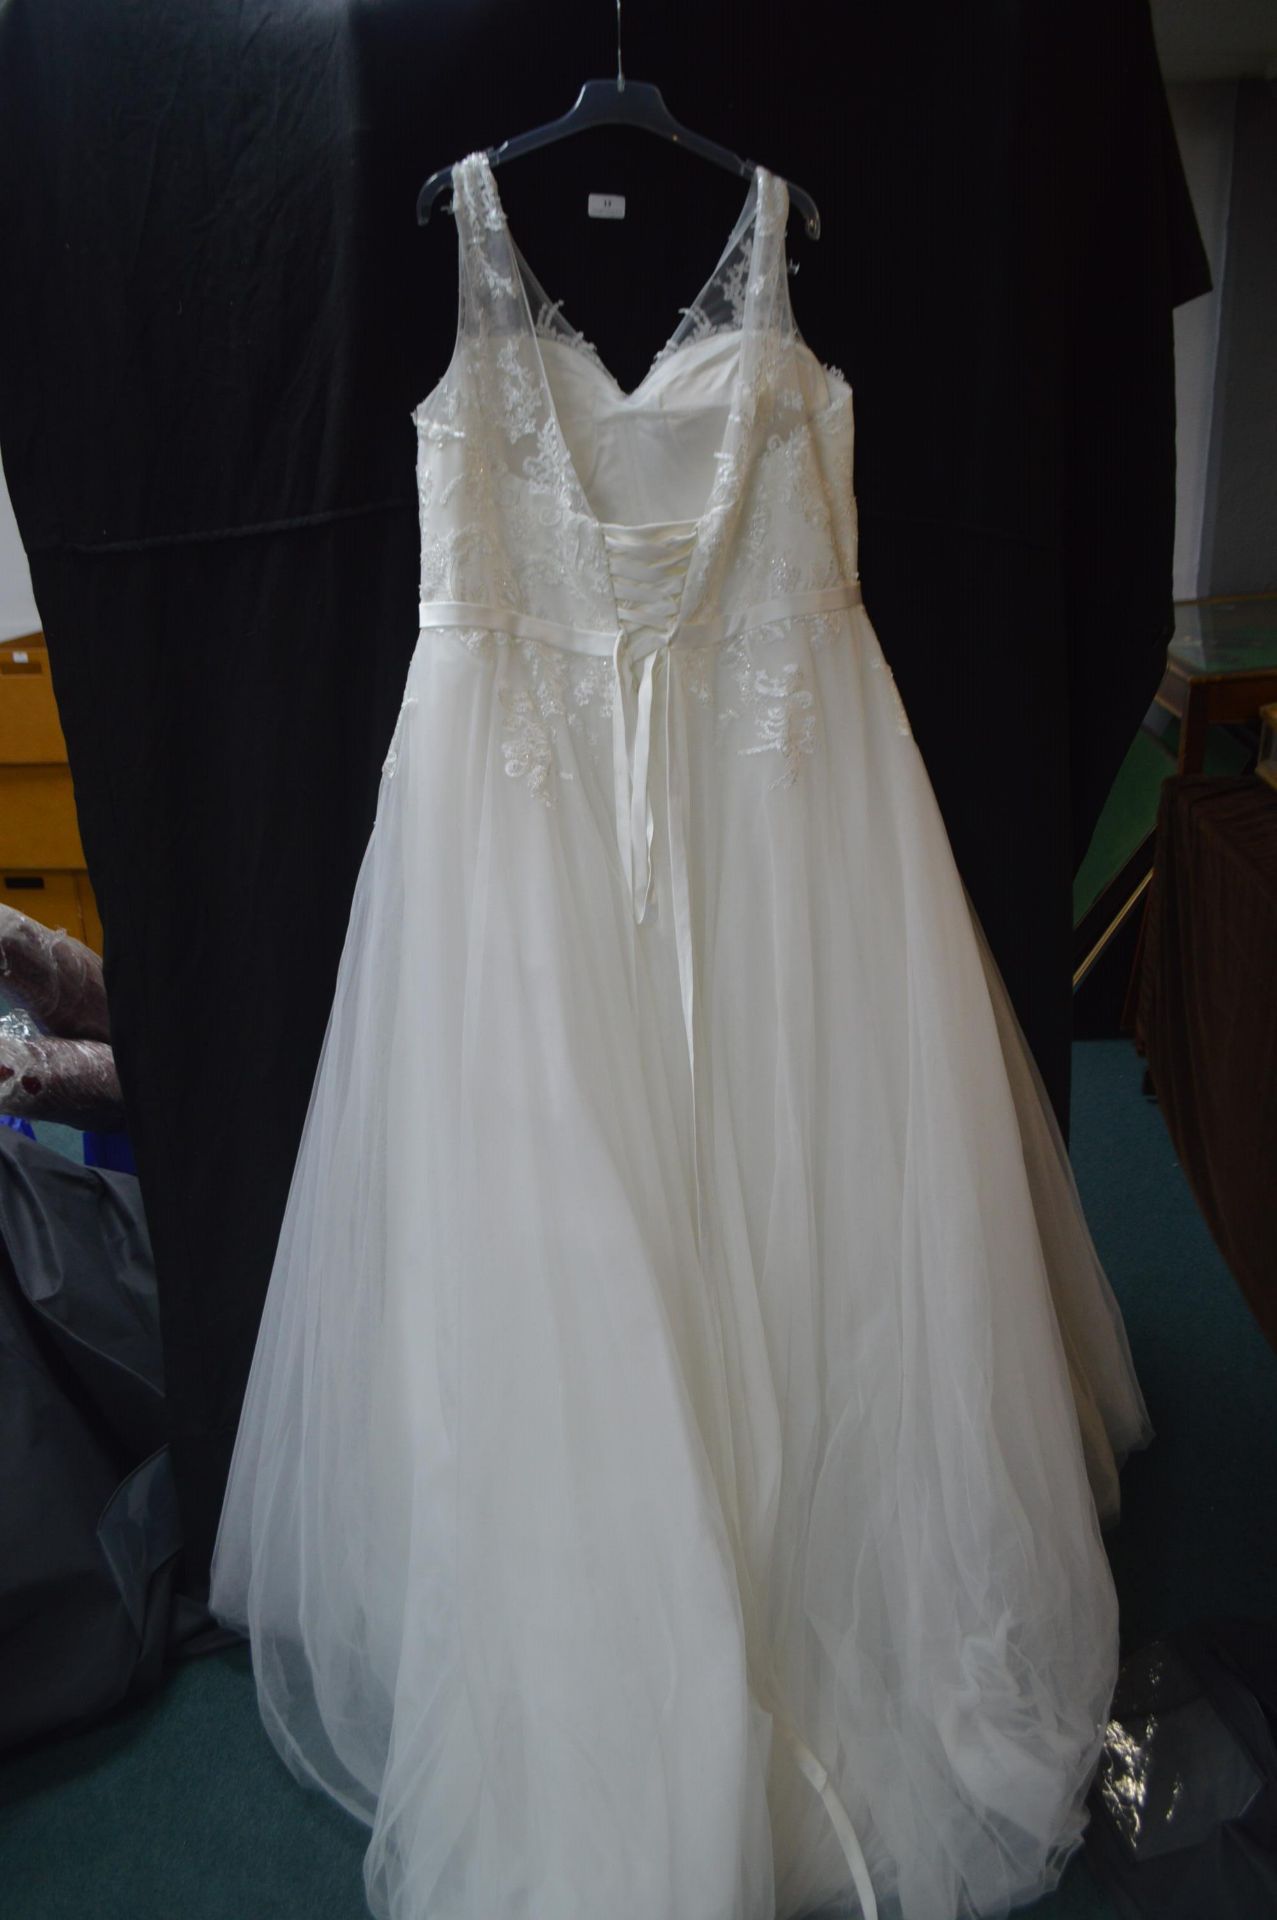 Victoria Kay Ivory Wedding Dress Size: 24 - Image 2 of 2